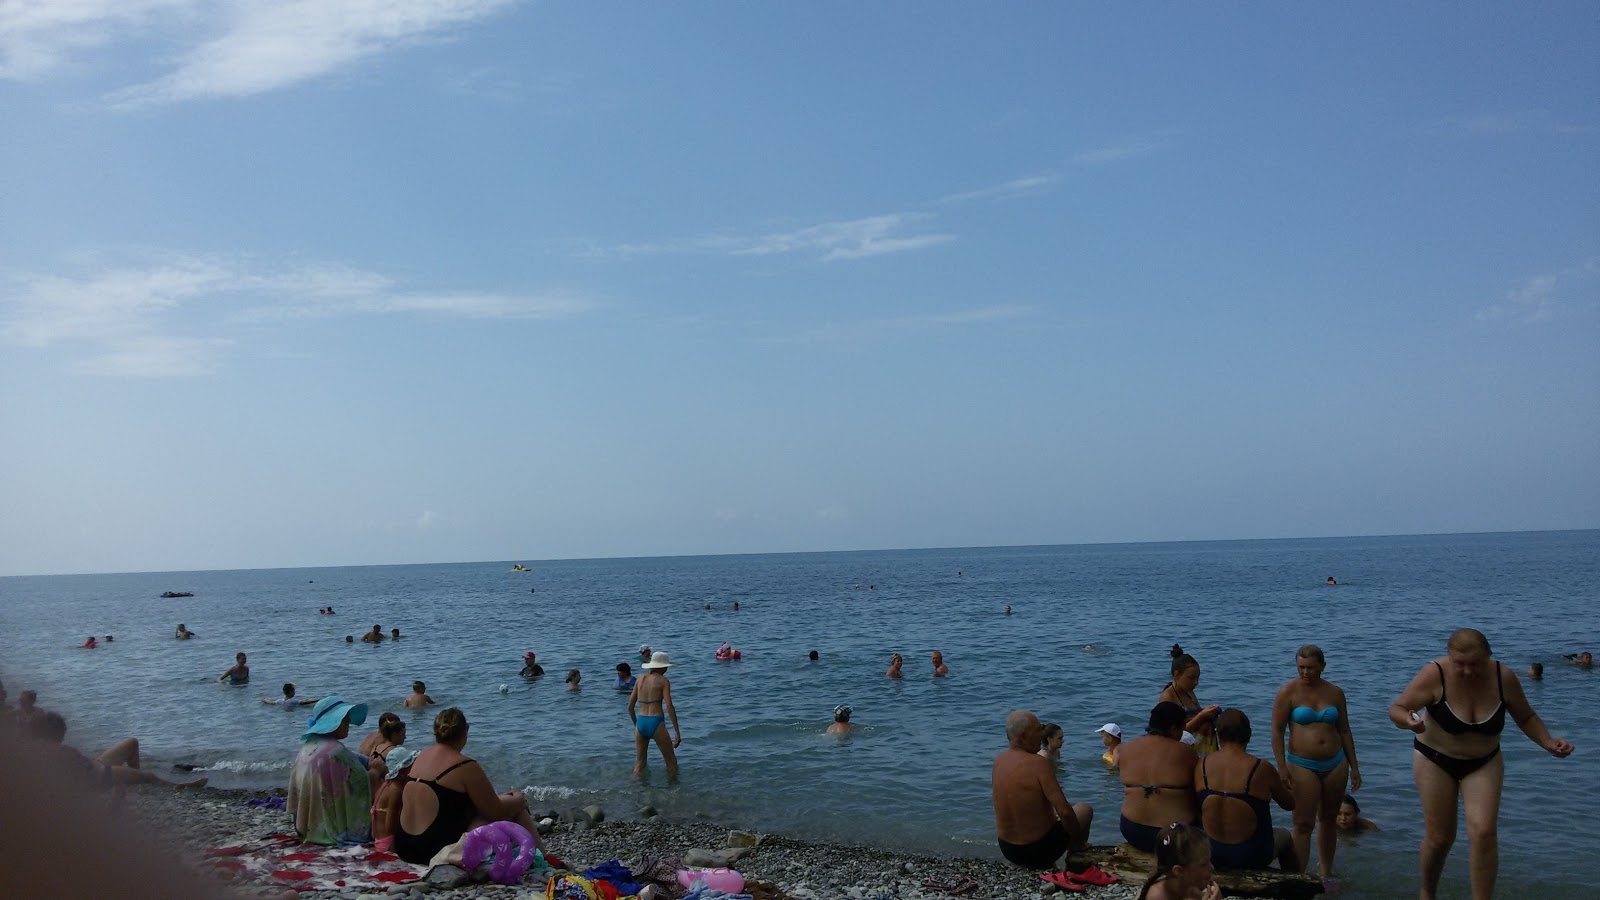 Inal Bay beach II'in fotoğrafı geniş plaj ile birlikte